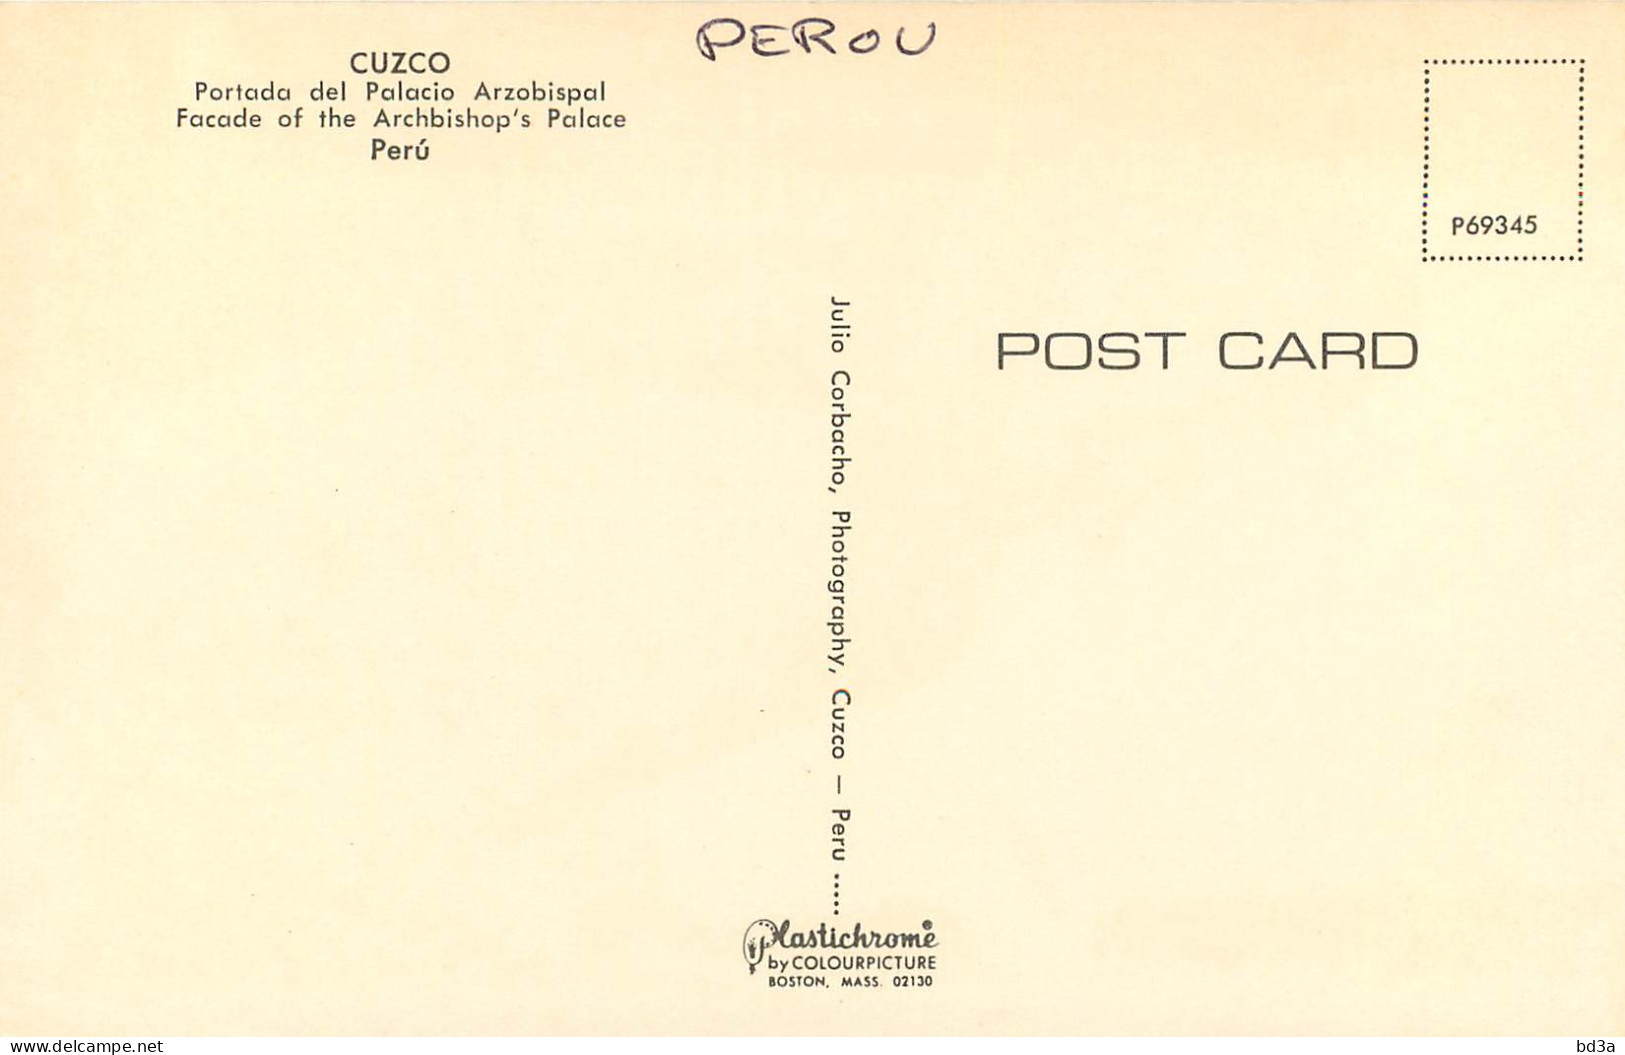 PEROU PERU CUZCO - Peru